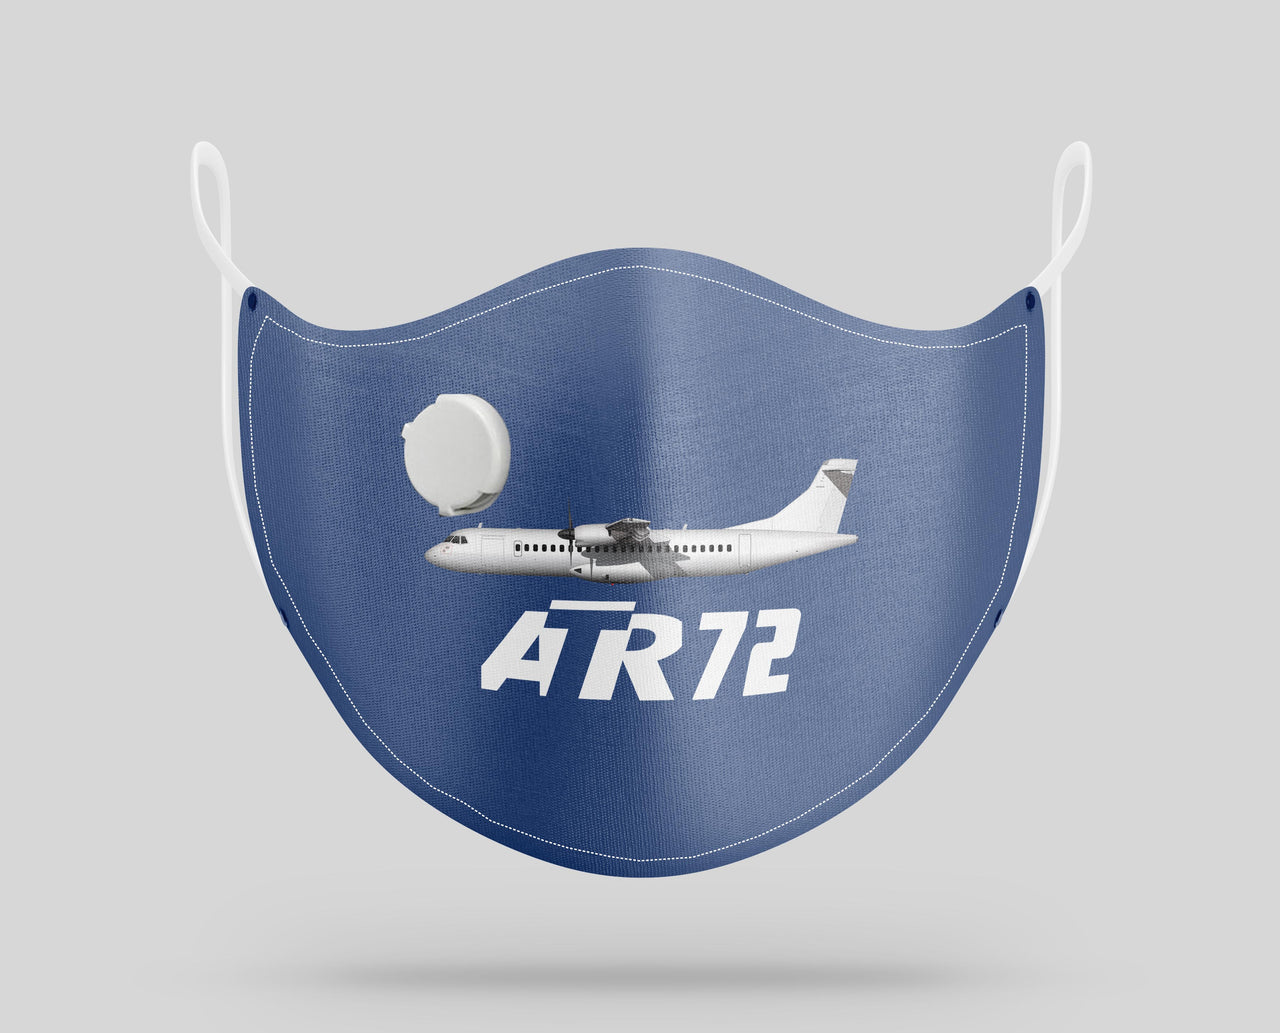 The ATR72 Designed Face Masks